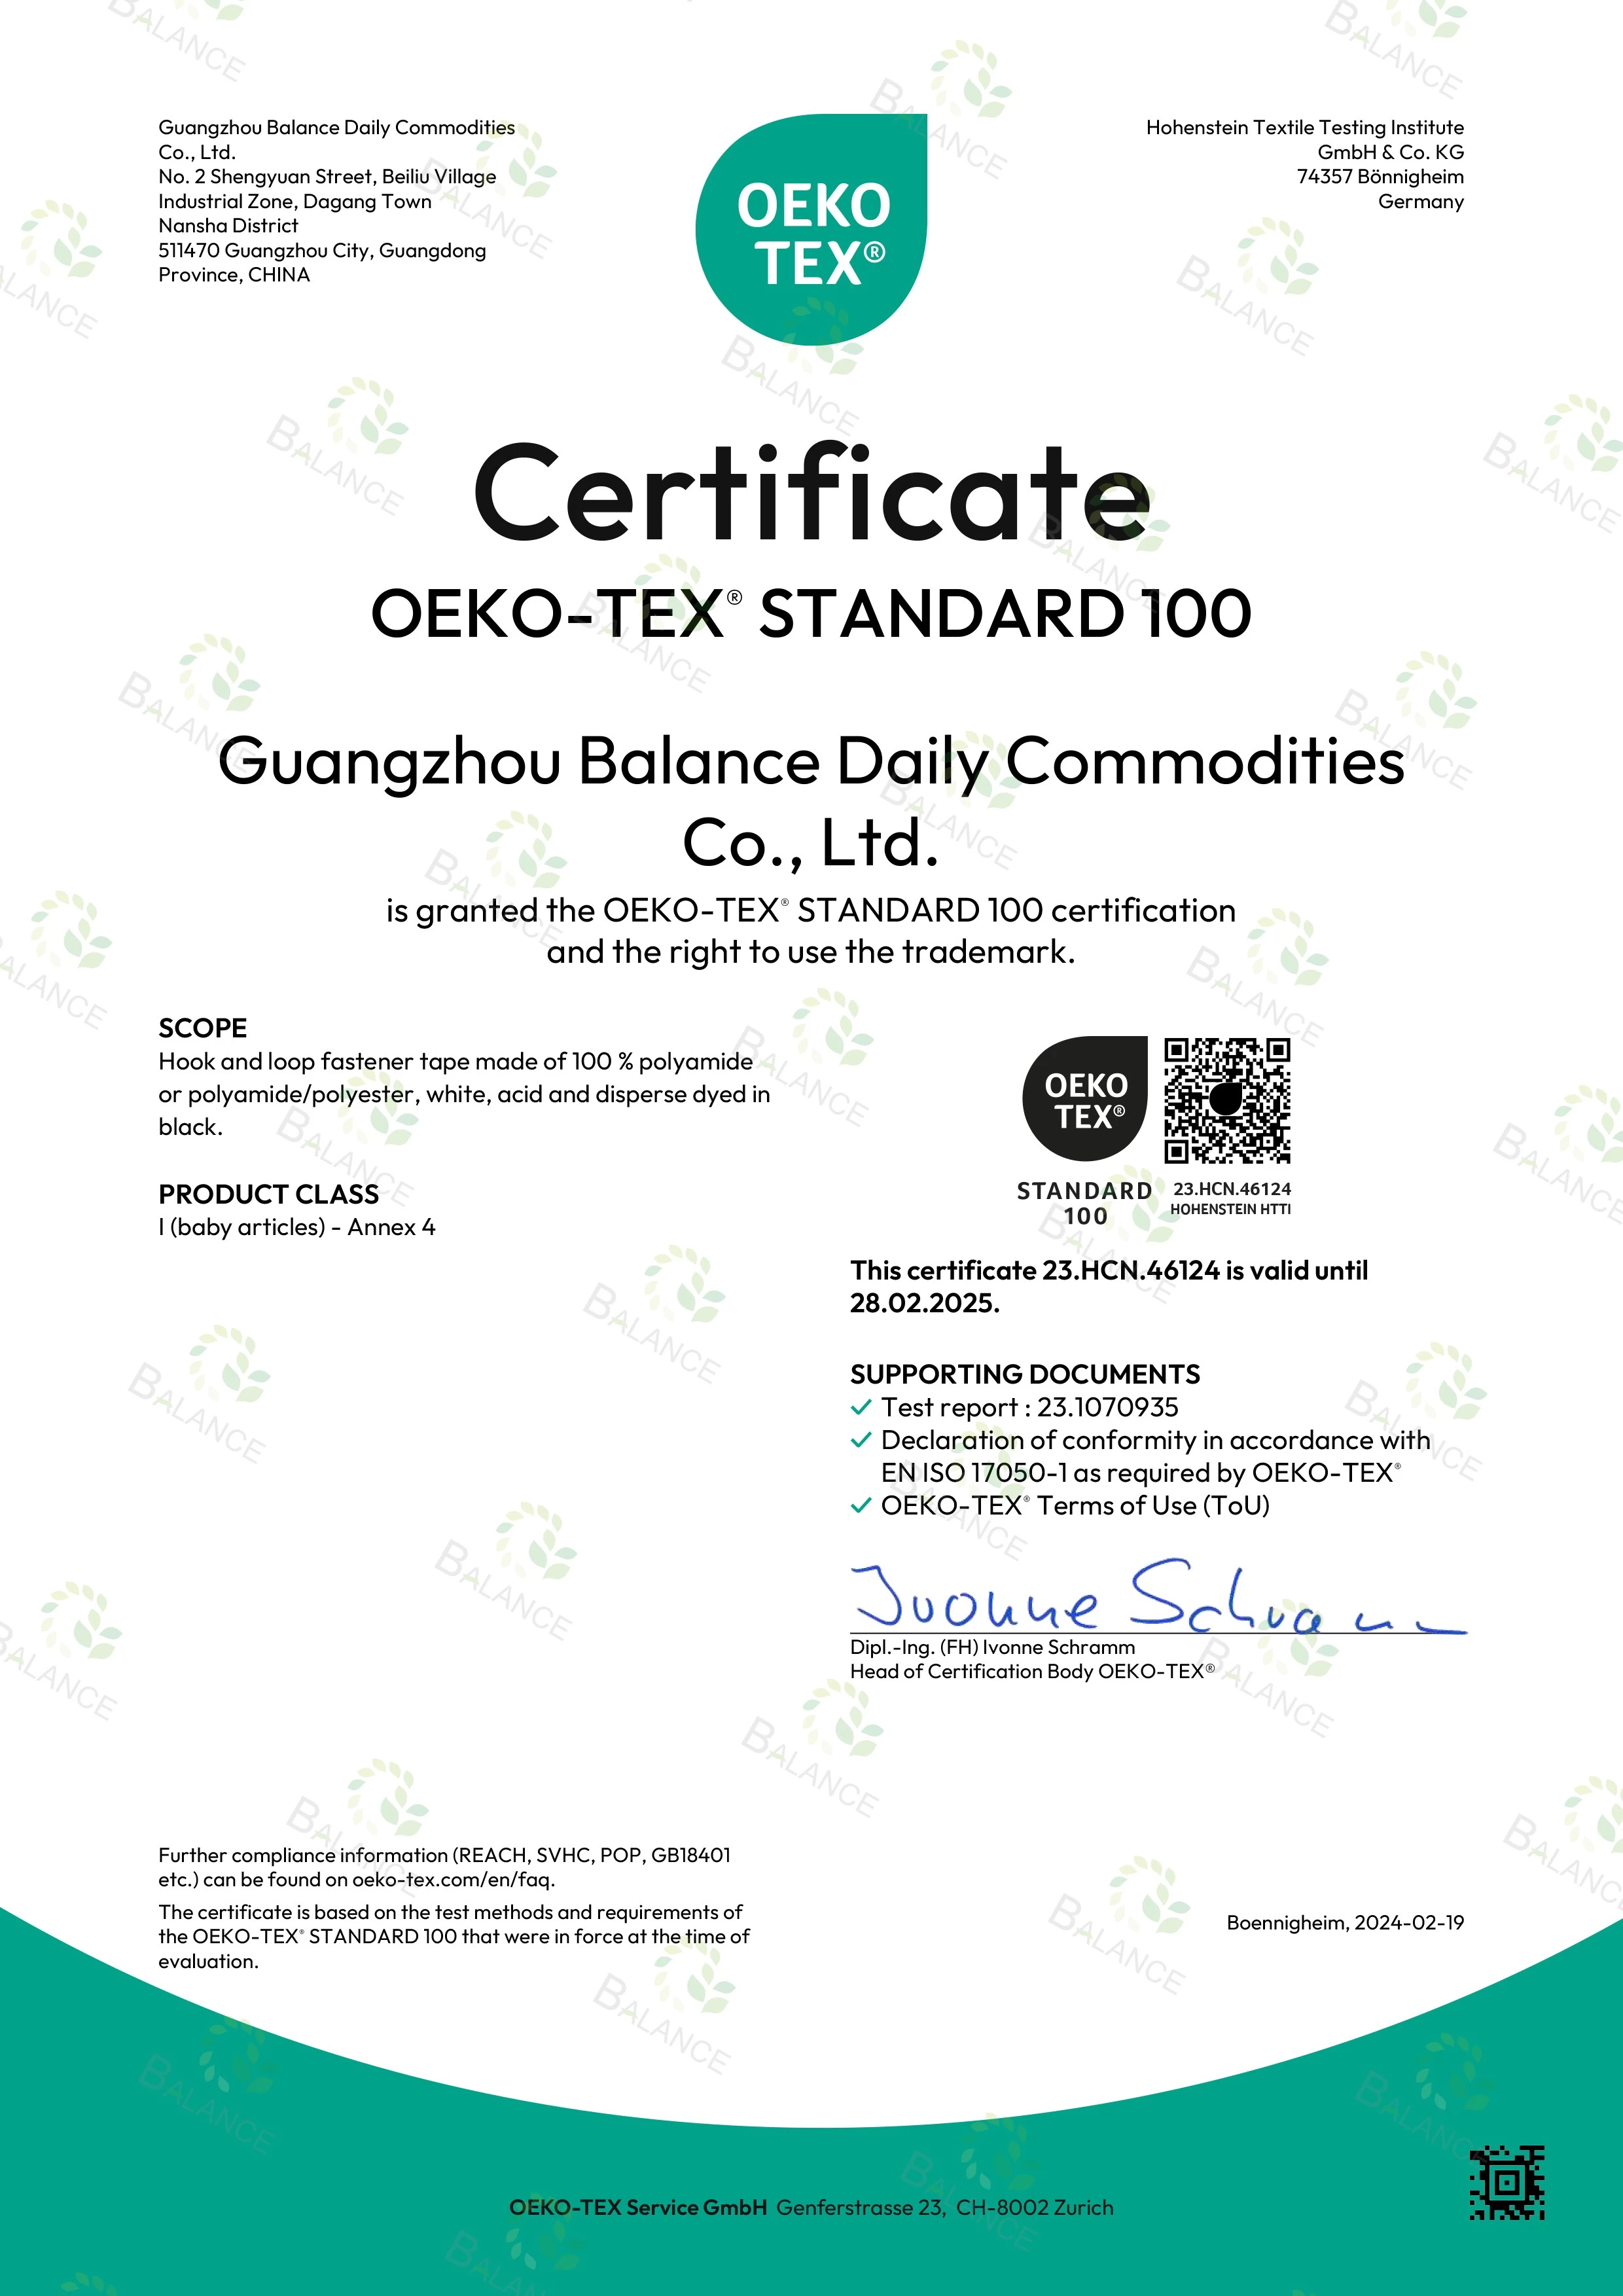 エキサイティングなニュース!当社の面ファスナーテープは OEKO-TEX の STANDARD 100 認証を取得しています